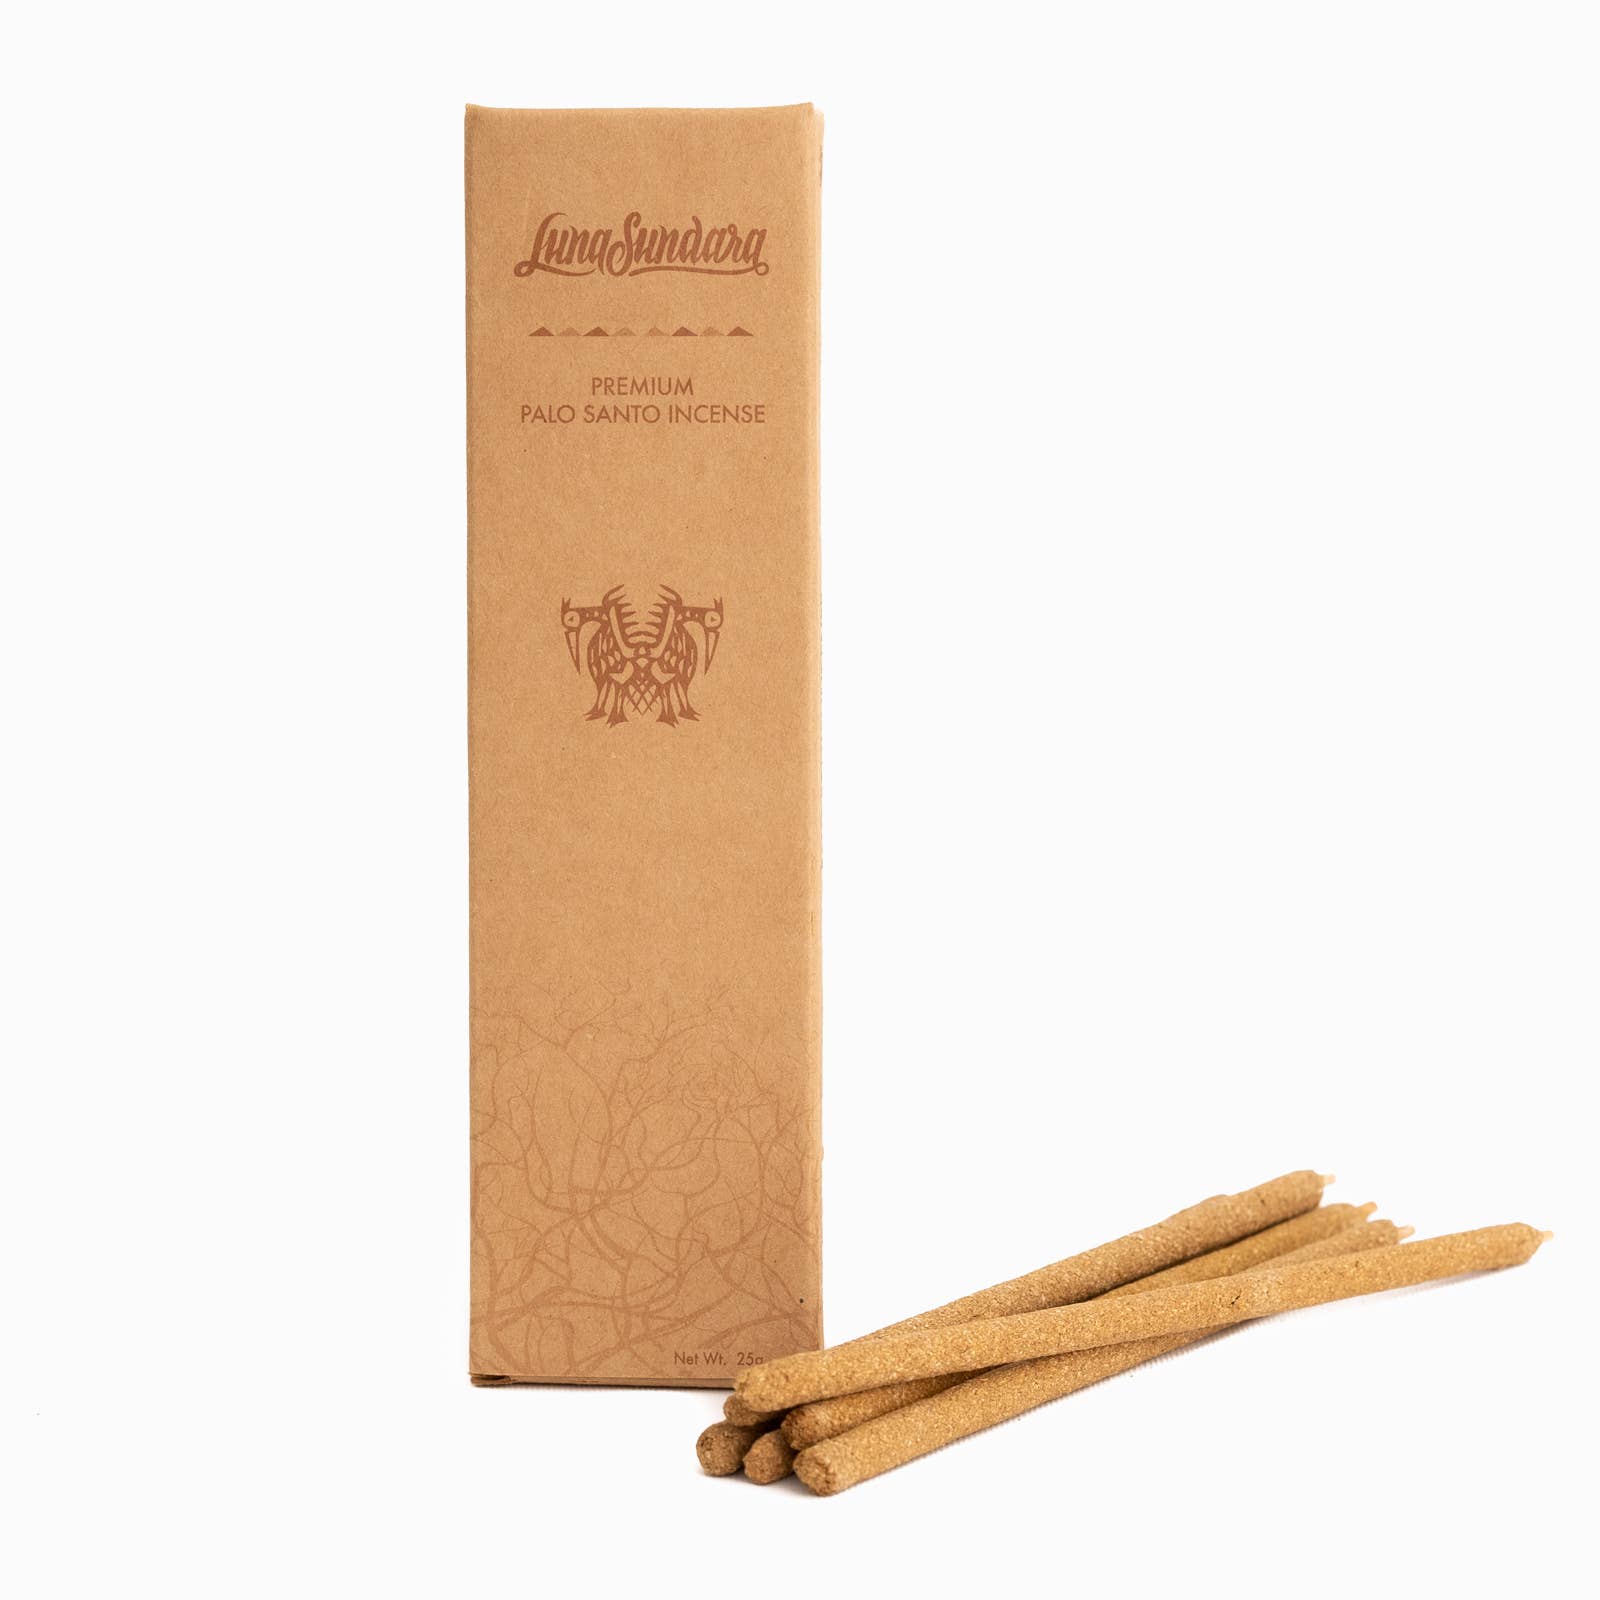 Luna Sundara: Premium Palo Santo Hand-Rolled Incense Sticks